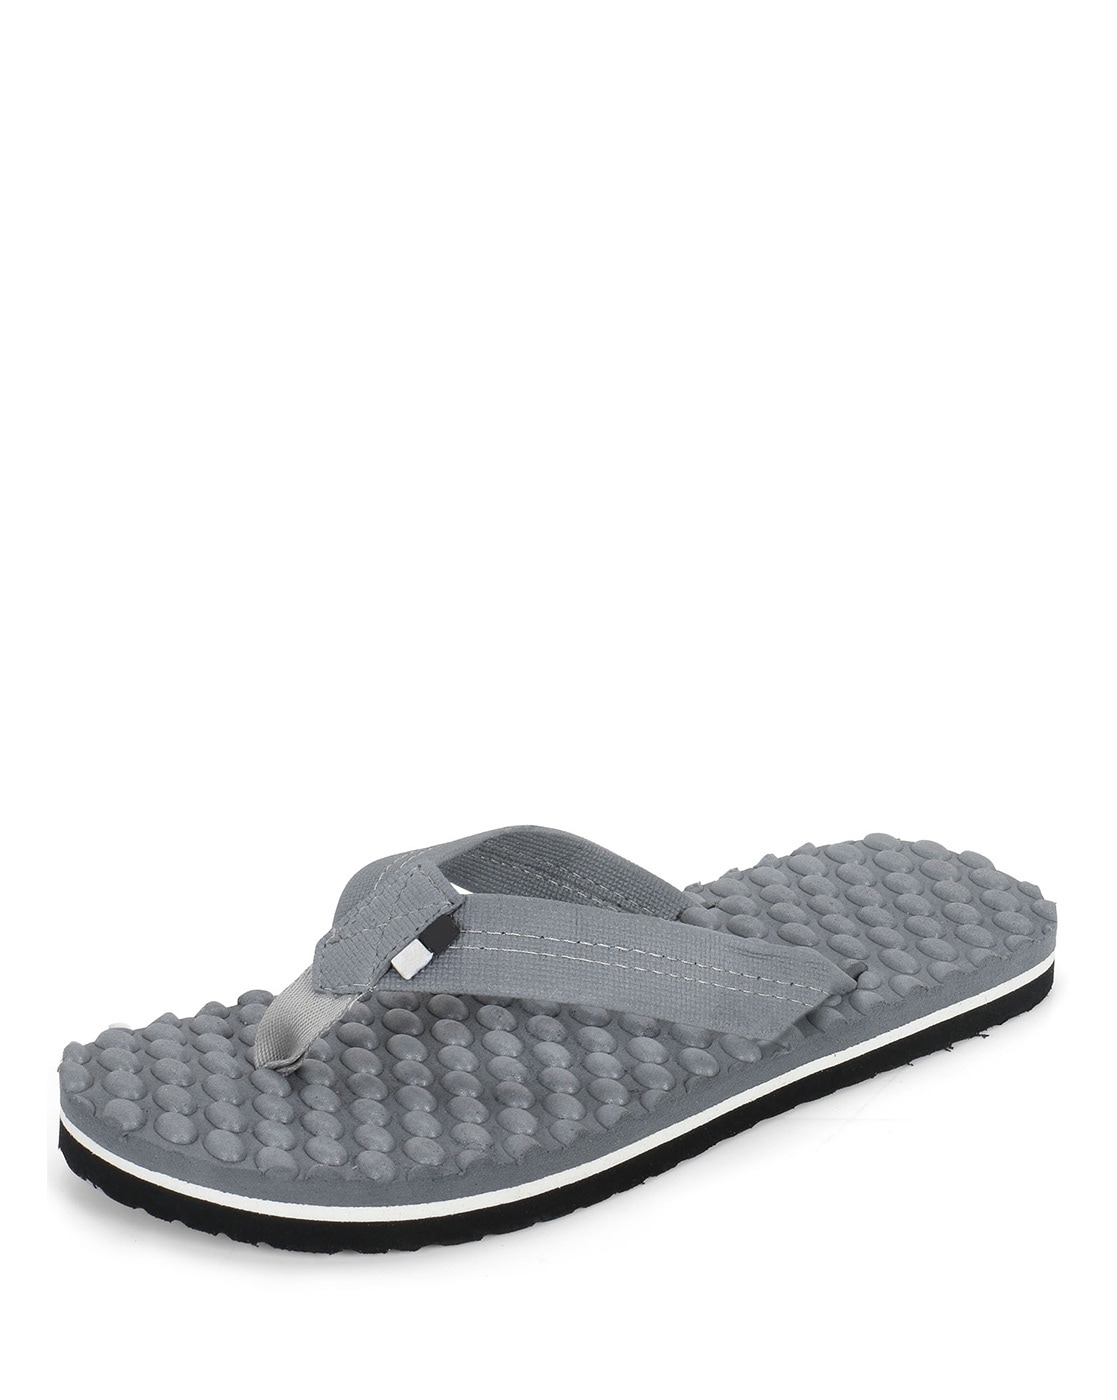 Borjan Shoes - Enjoy UPTO 50% OFF on Women Indoor Slippers... | Facebook